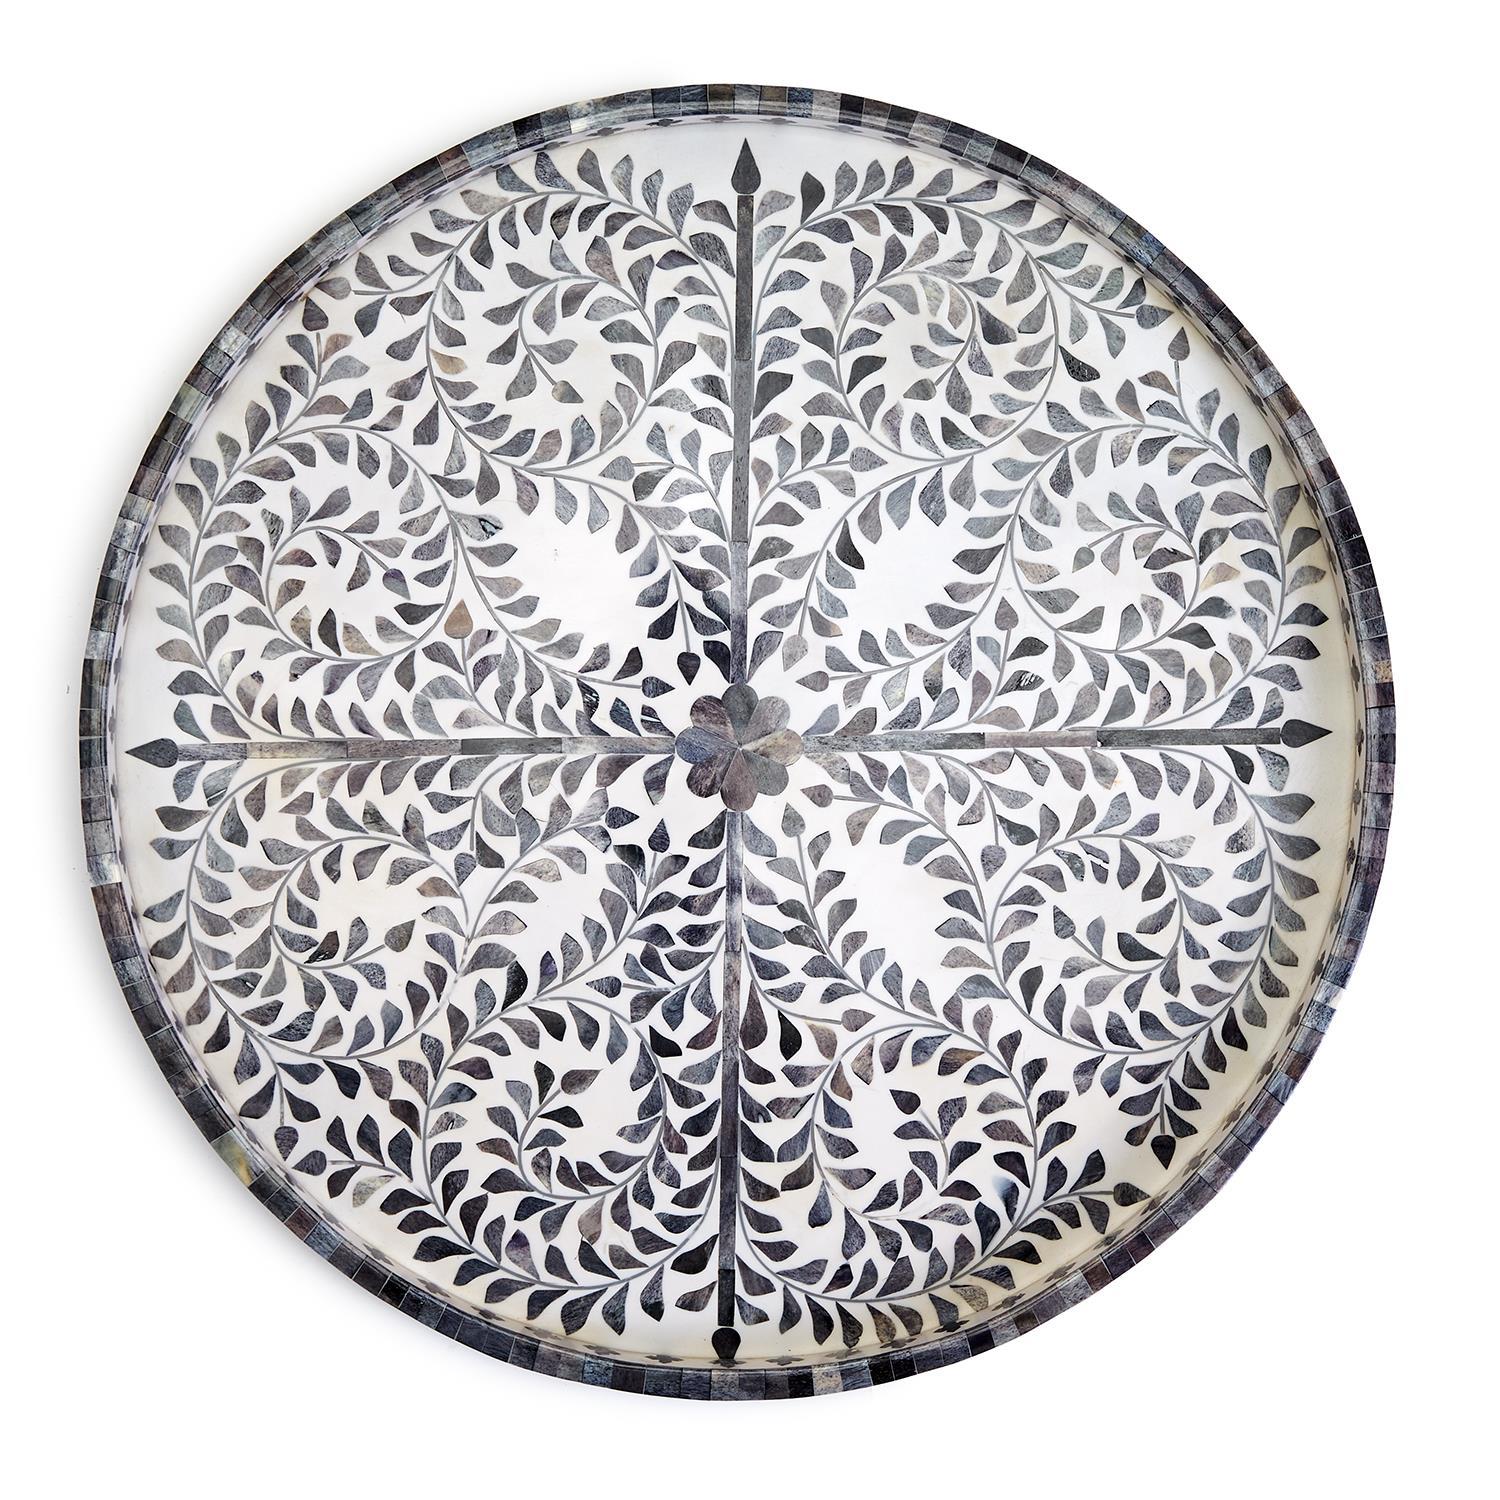 Two's Company Jaipur Palace Gray/Wht Inlaid Decorative Tray